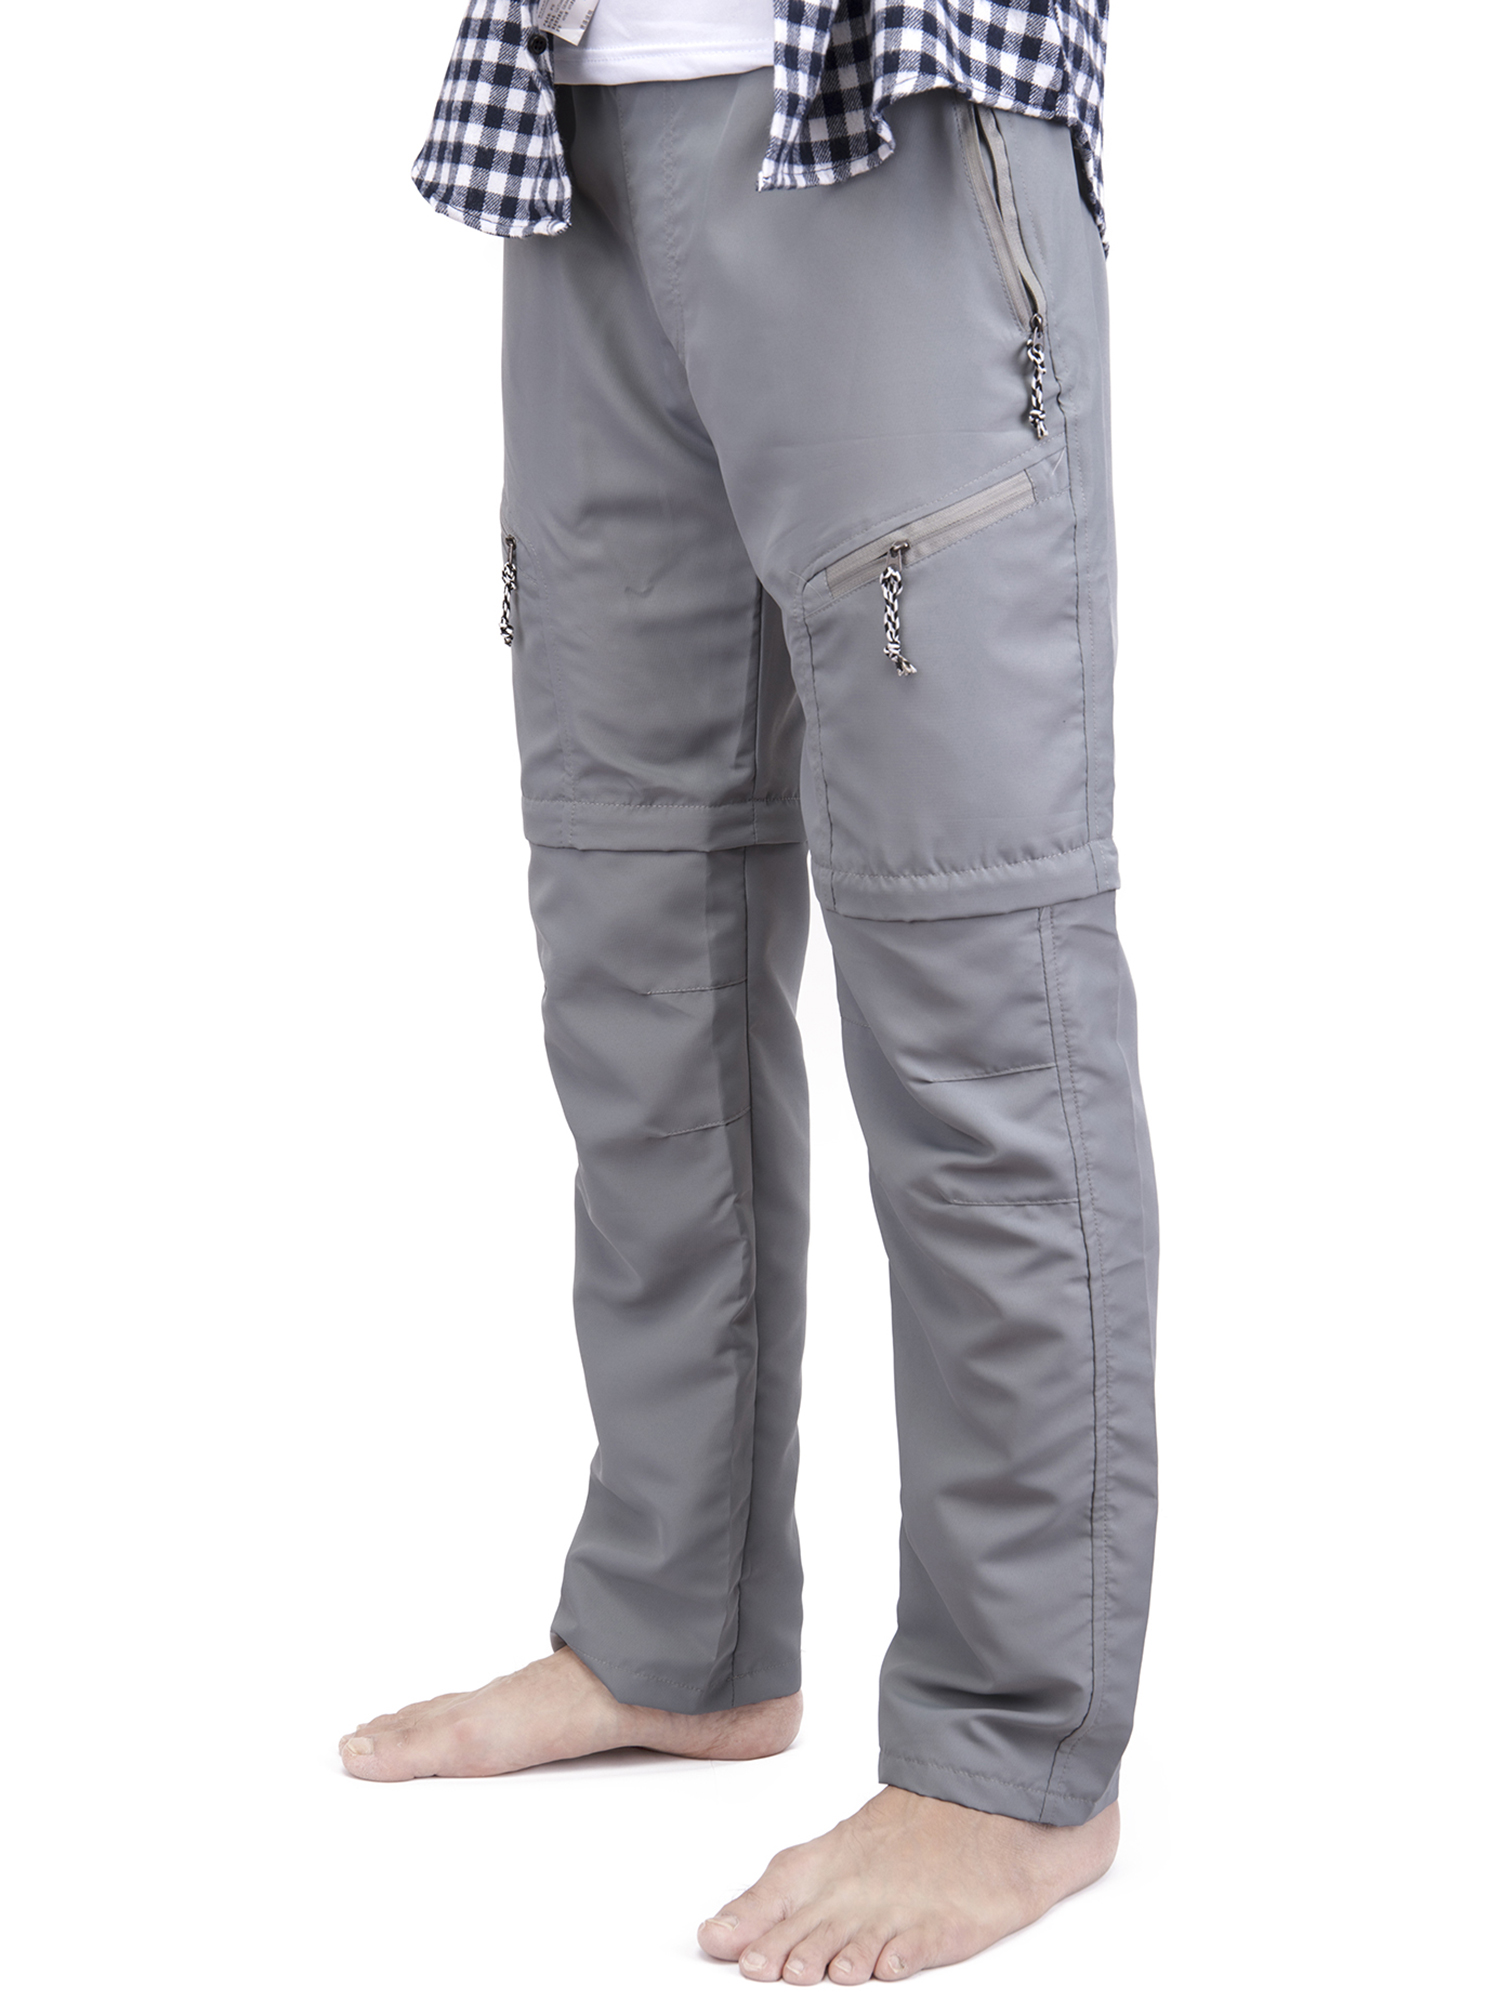 FOCUSSEXY Men's Cargo Pants Lightweight Work Pants Men's Hiking Cargo Pants Cargo Convertible Pants Men's Convertible Pant Casual Long Pants - image 4 of 7